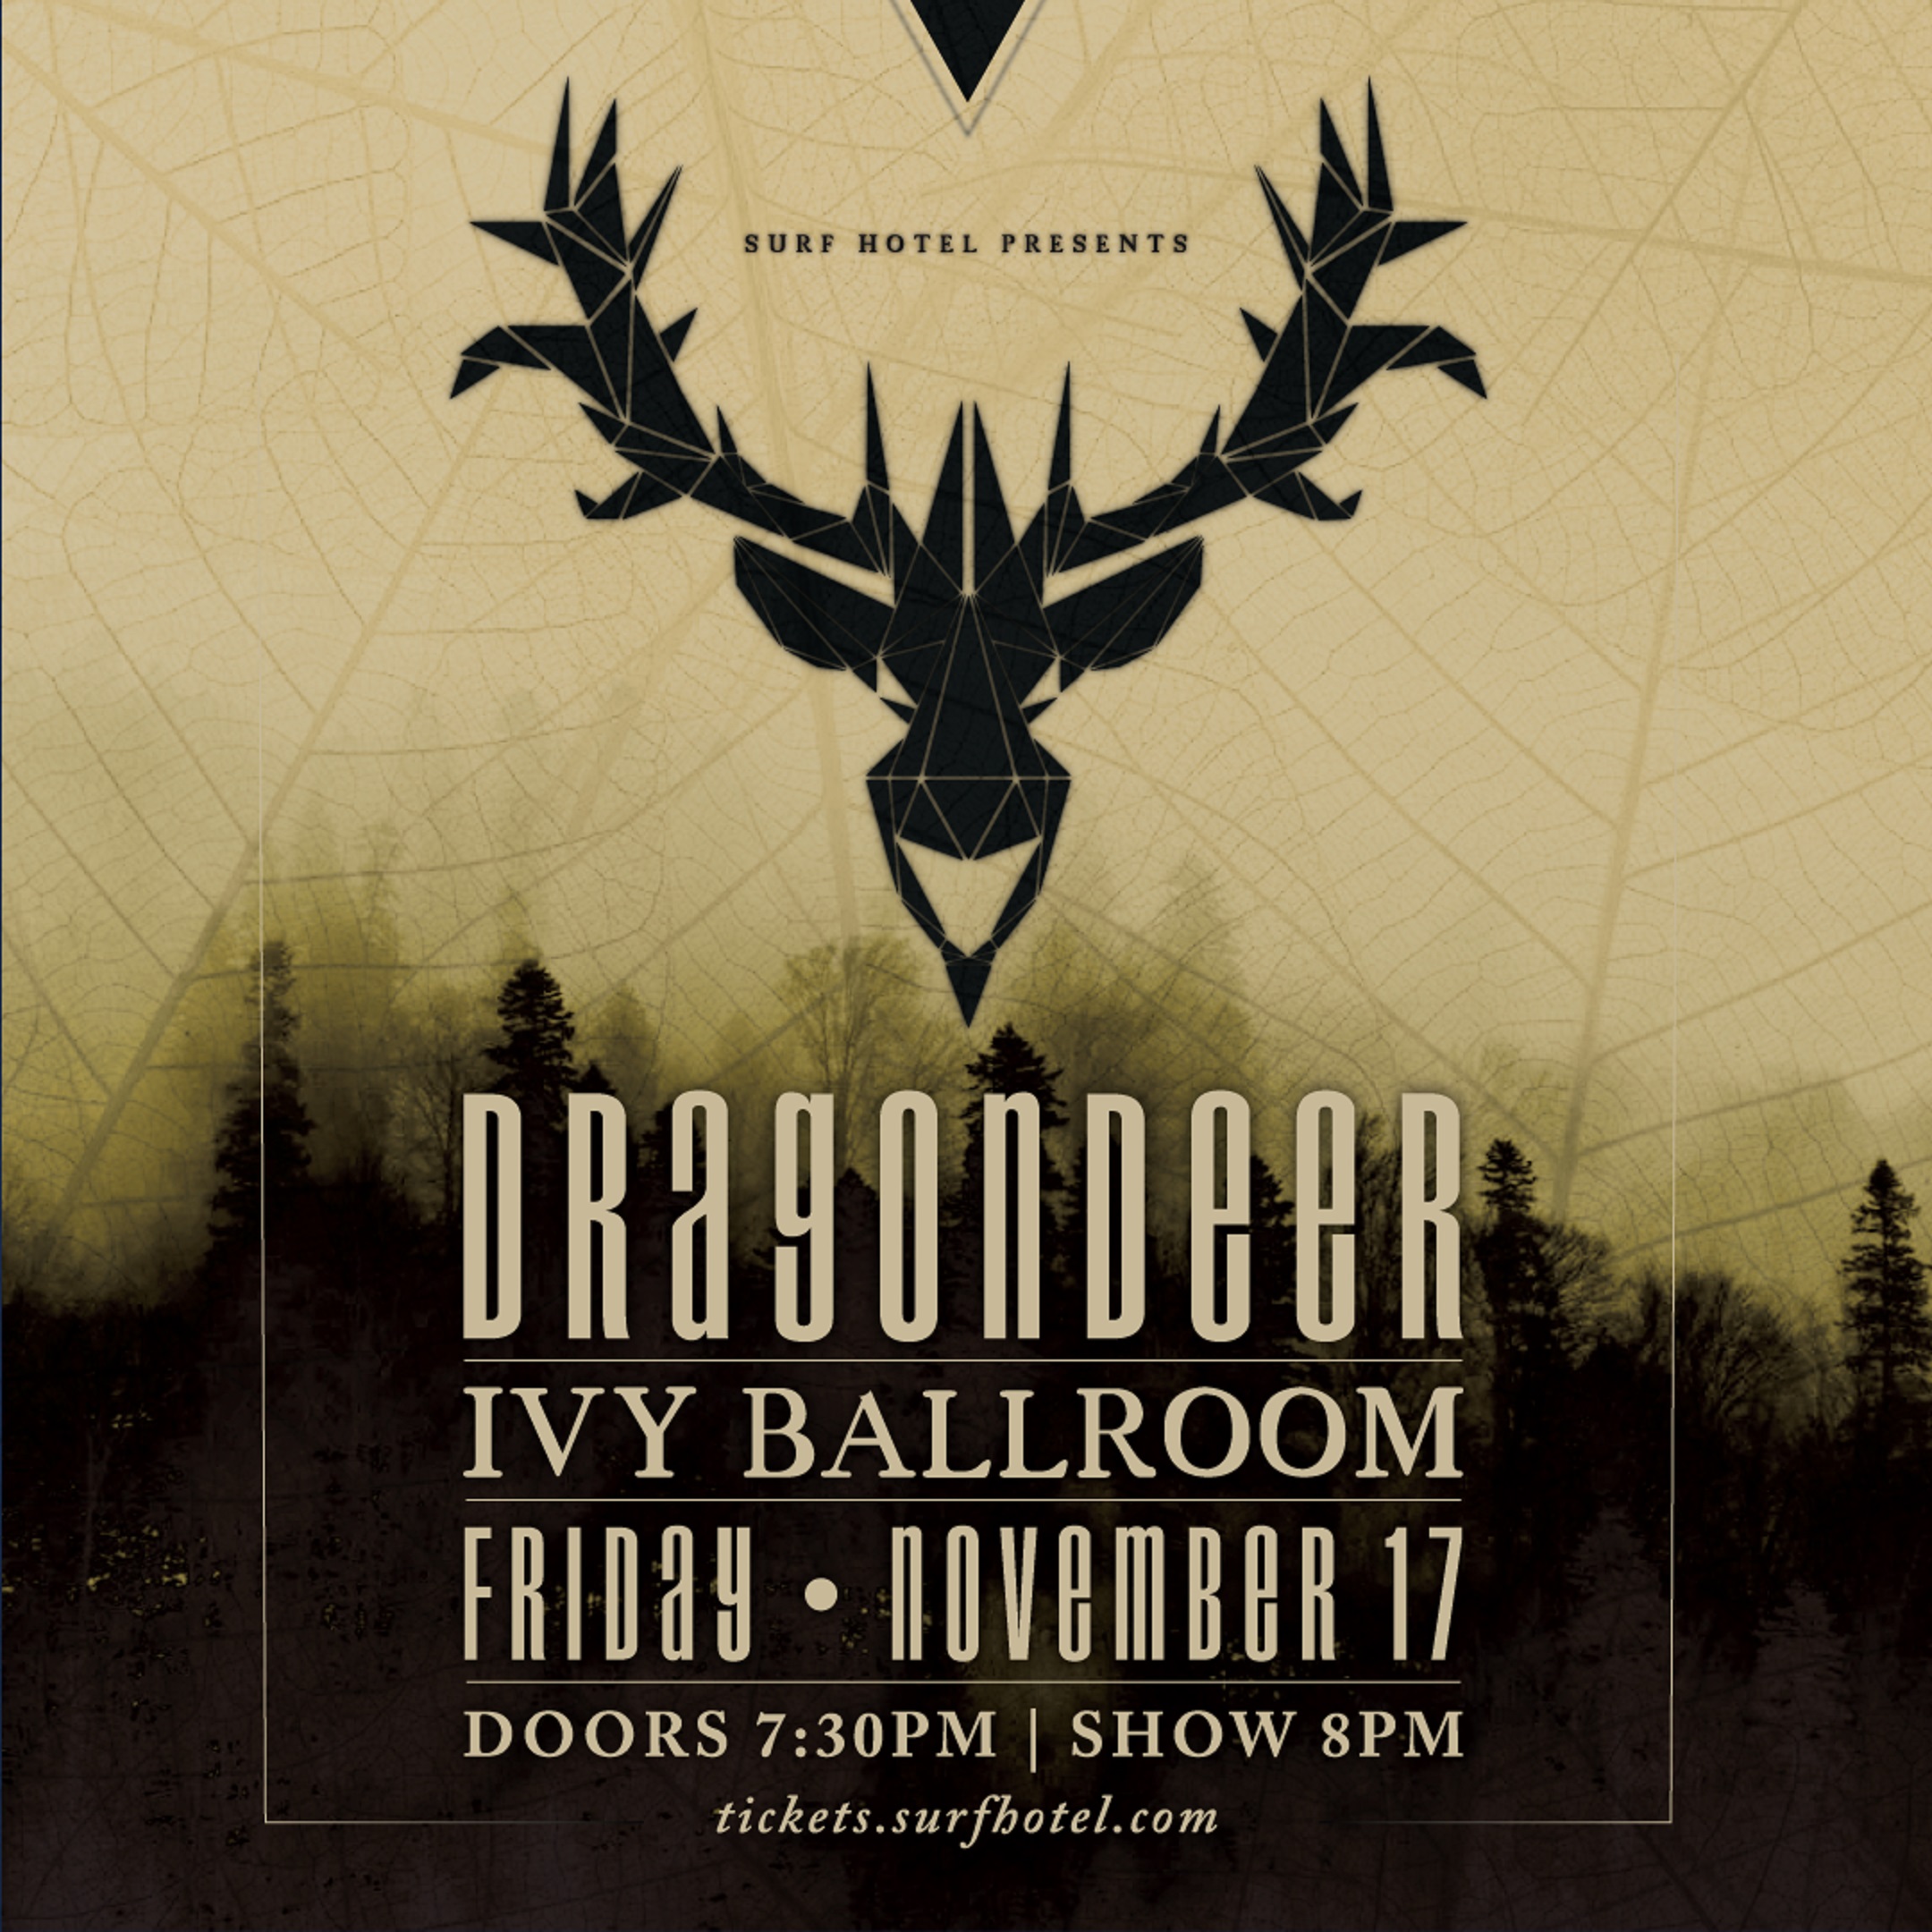 Dragondeer TOMORROW in the Ivy Ballroom